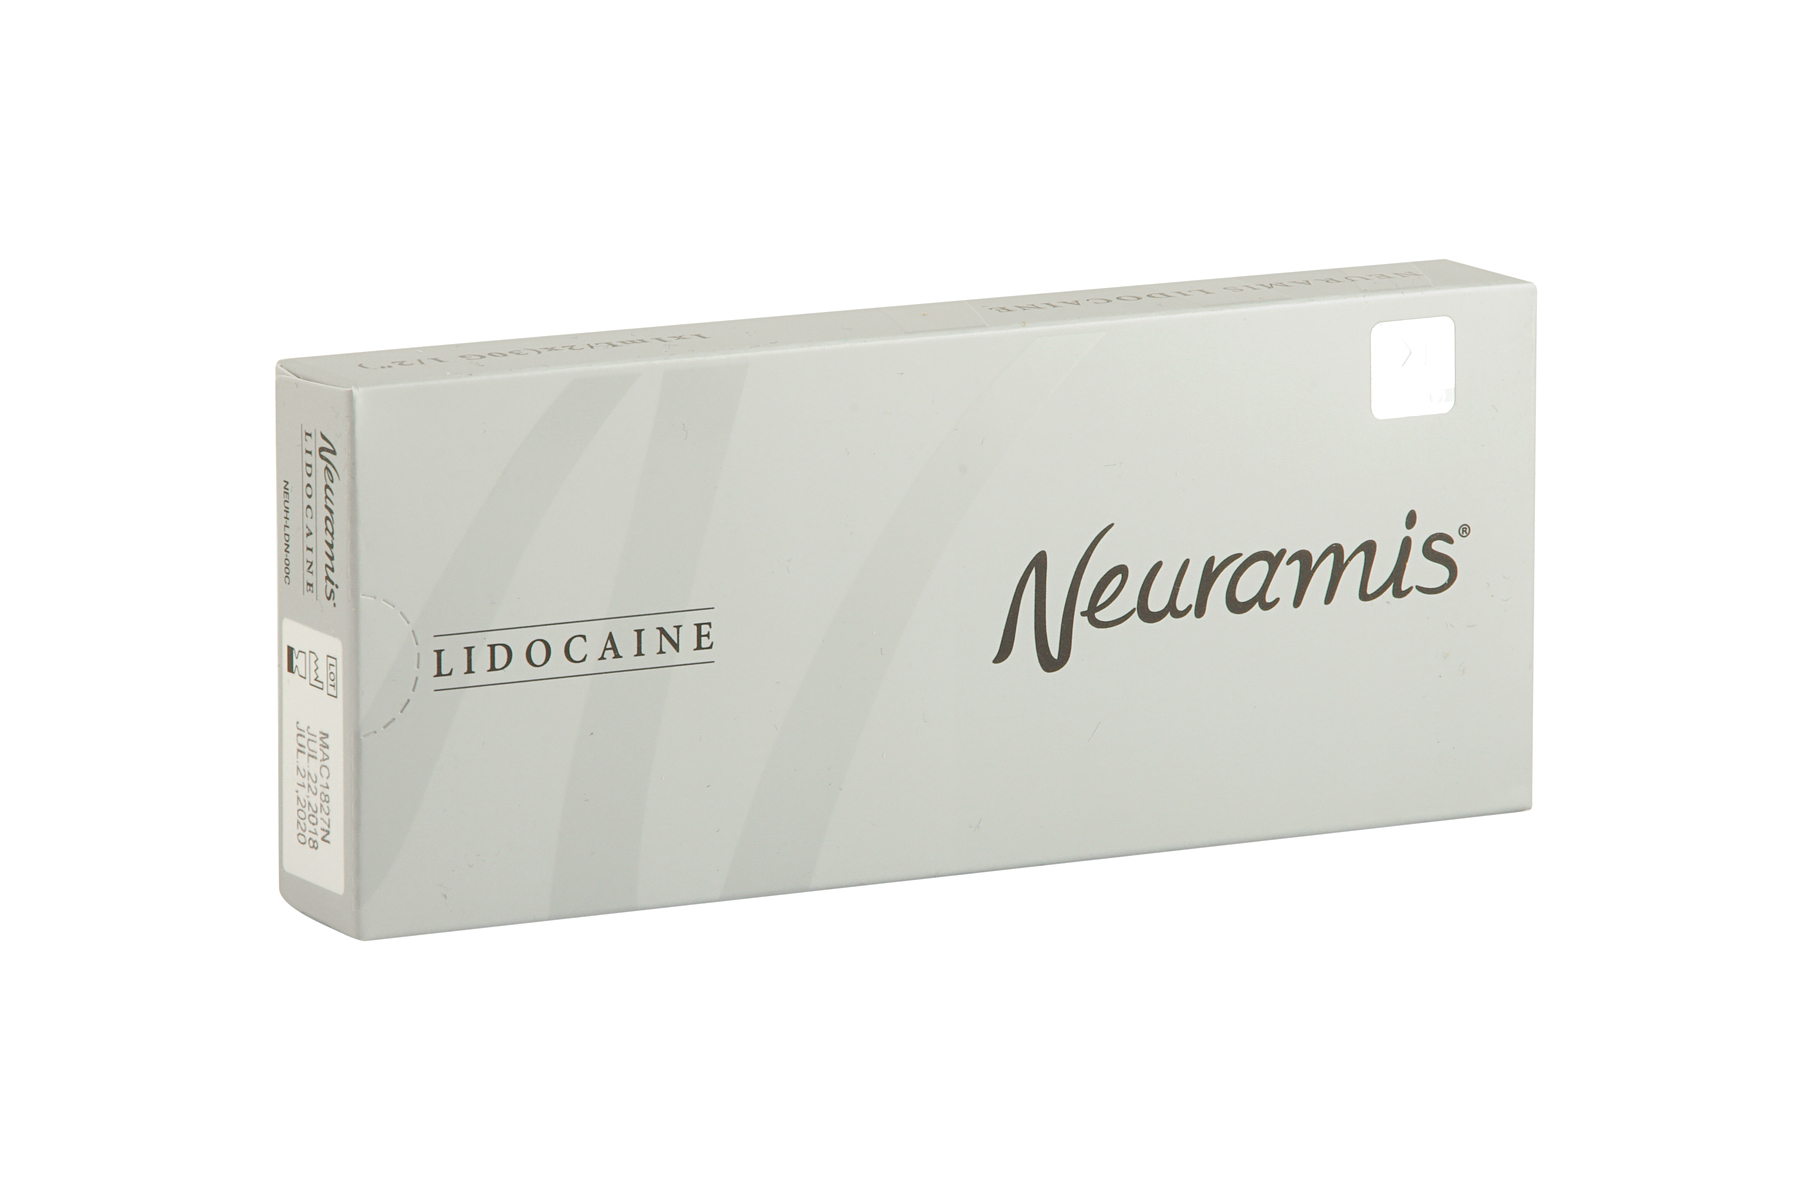 Нейрамис филлеры отзывы губы. Neuramis филлер. Нейрамис 1 мл. Нейрамис дип. 1 Мл Neuramis Deep ledocaine.